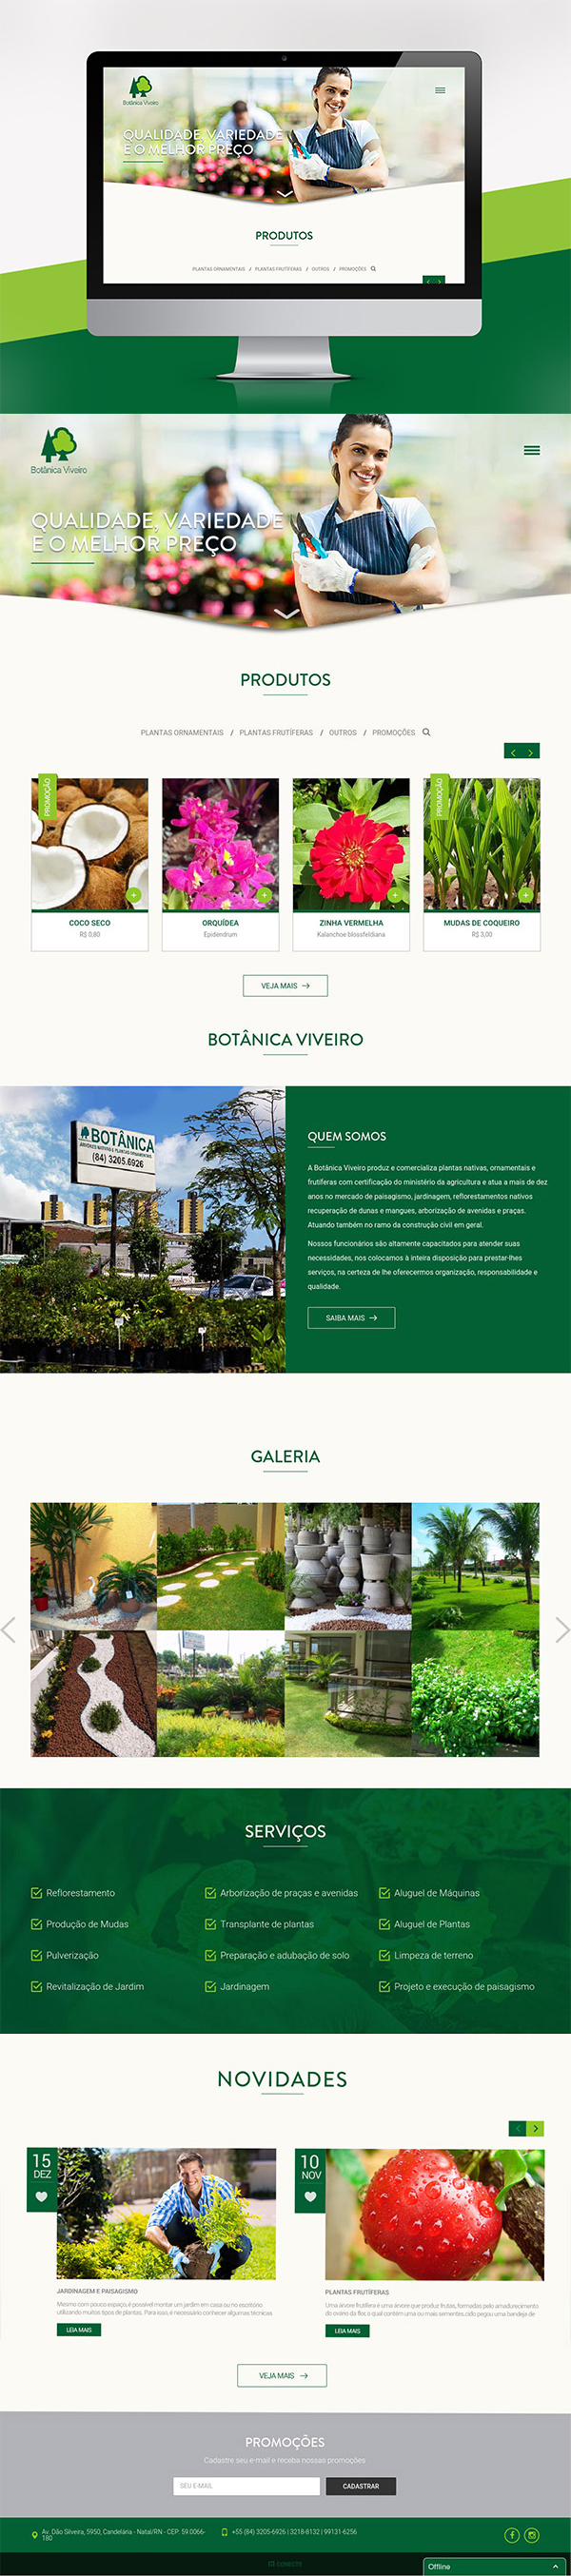 site-botanica-viveiro